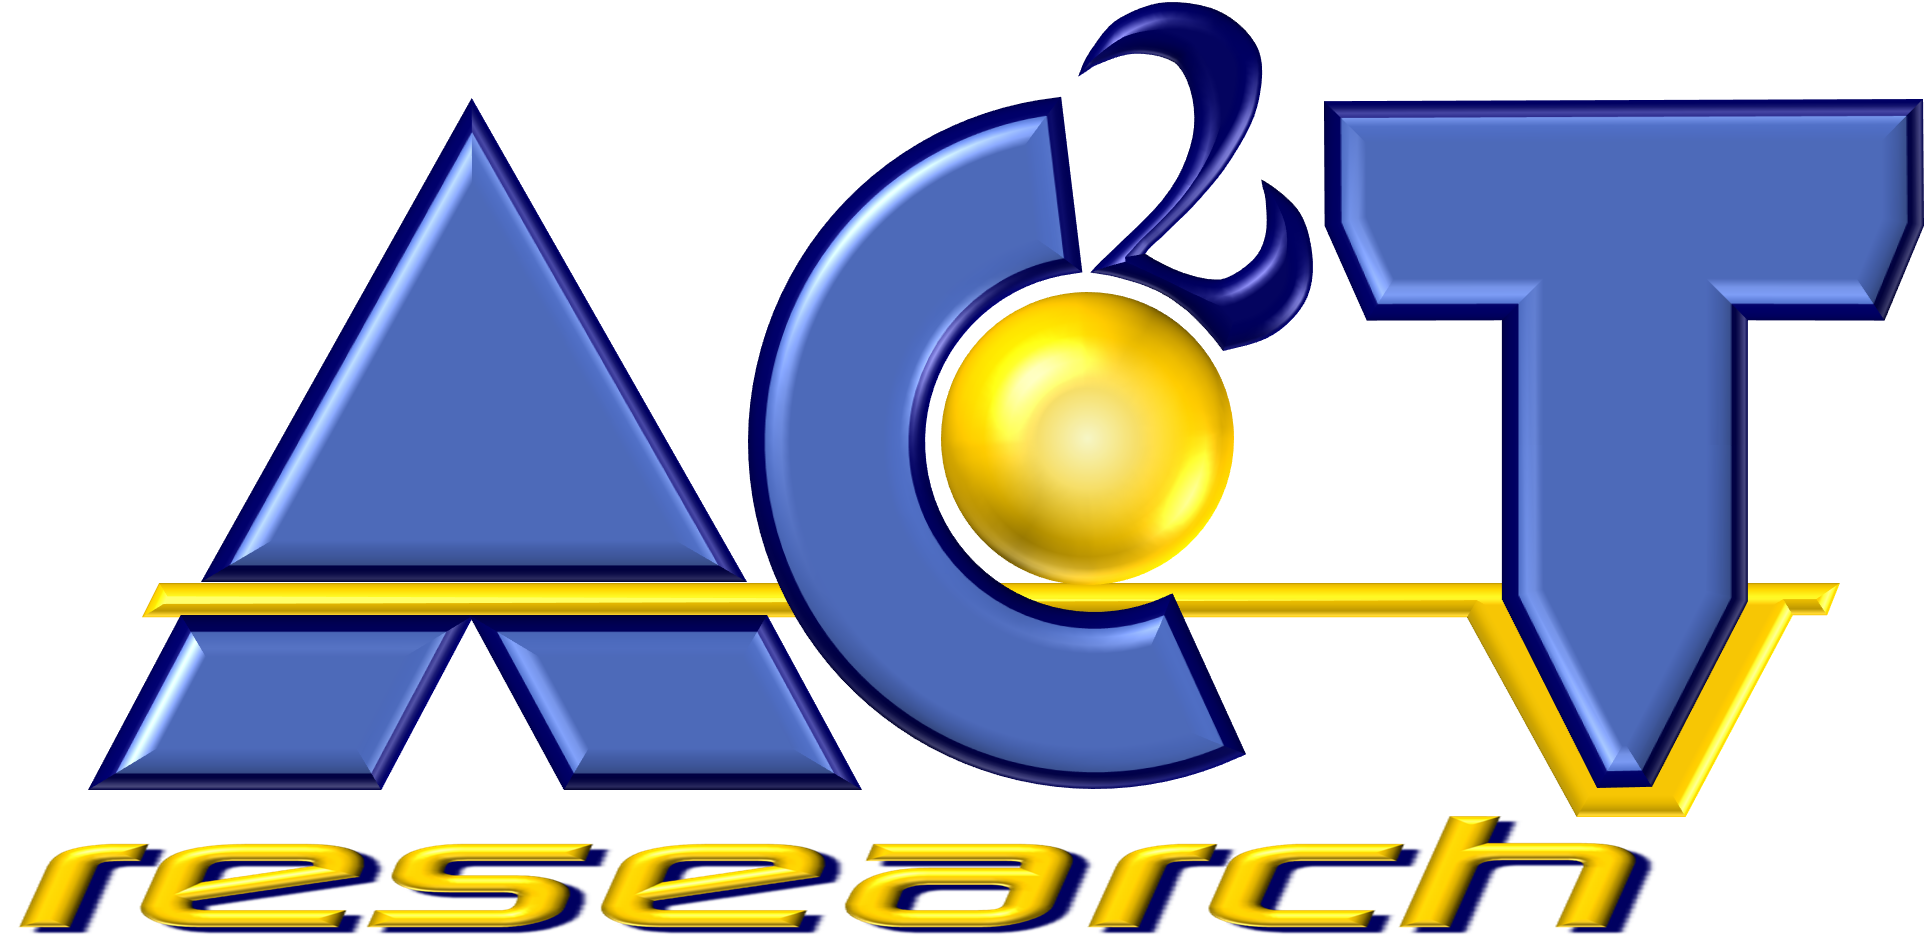 Ac2t logo3d high